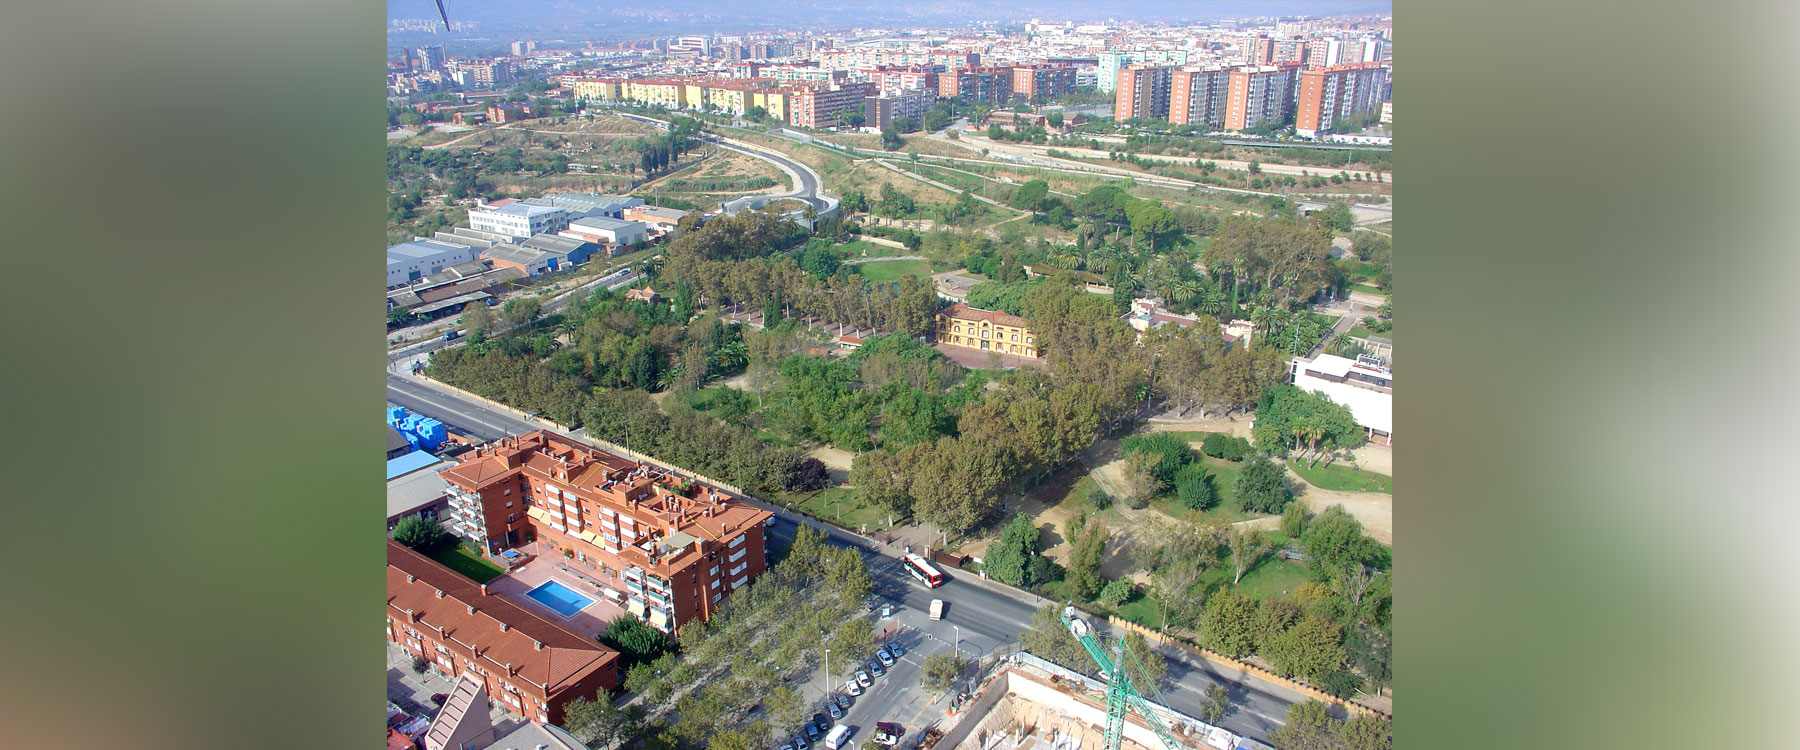 Parque Can Mercader - Cornellà de Llobregat